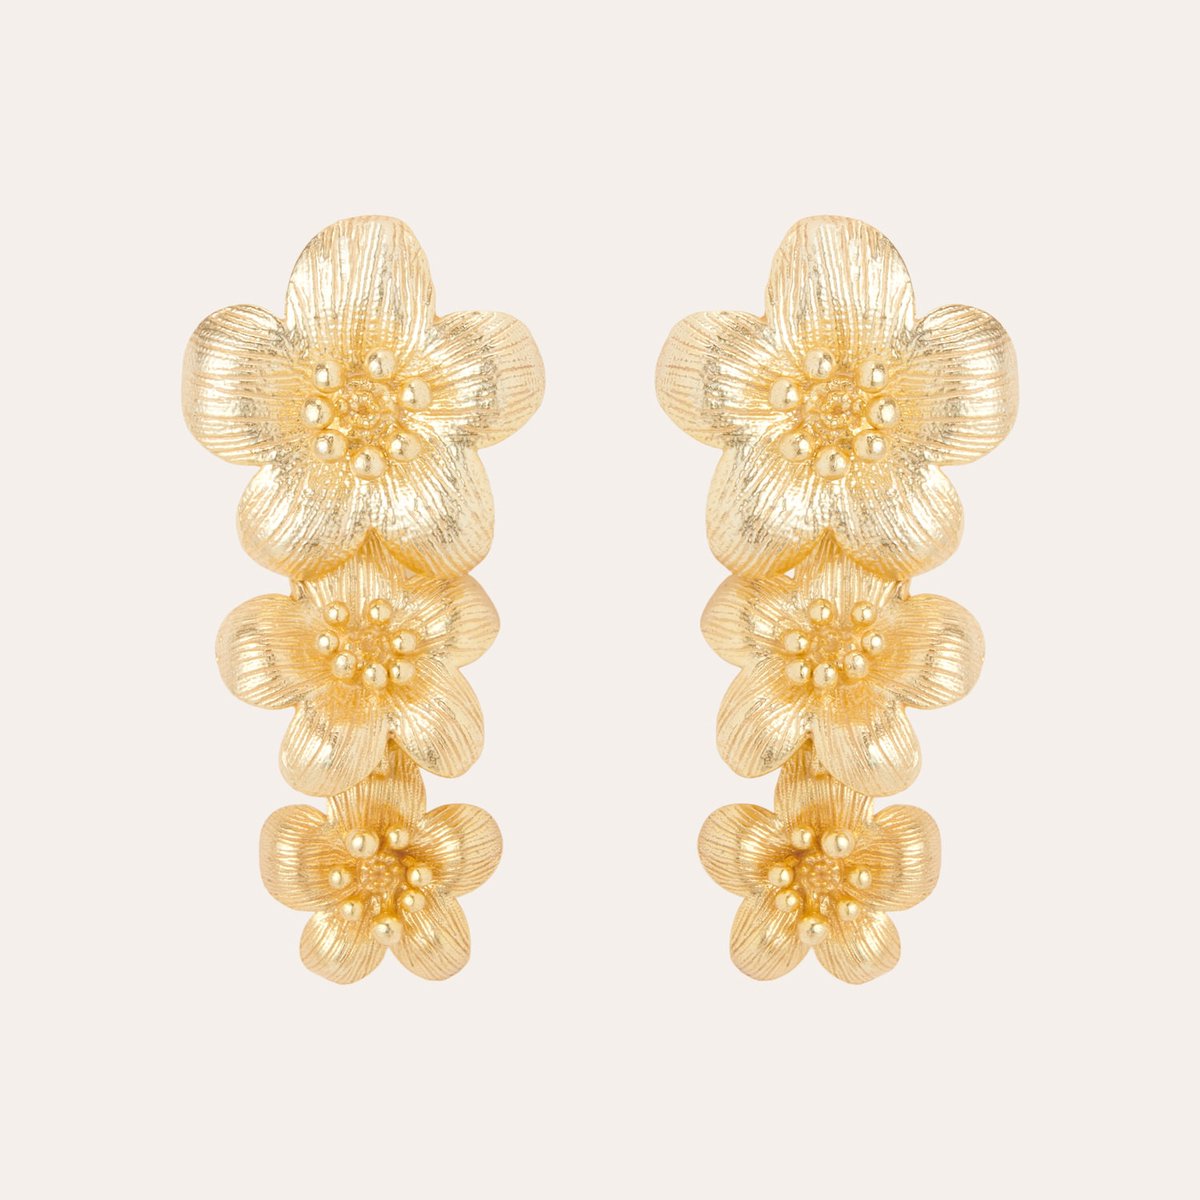 Le Rêve Amsterdam oorbellen met bloemen- goud op zilver- oorstekers